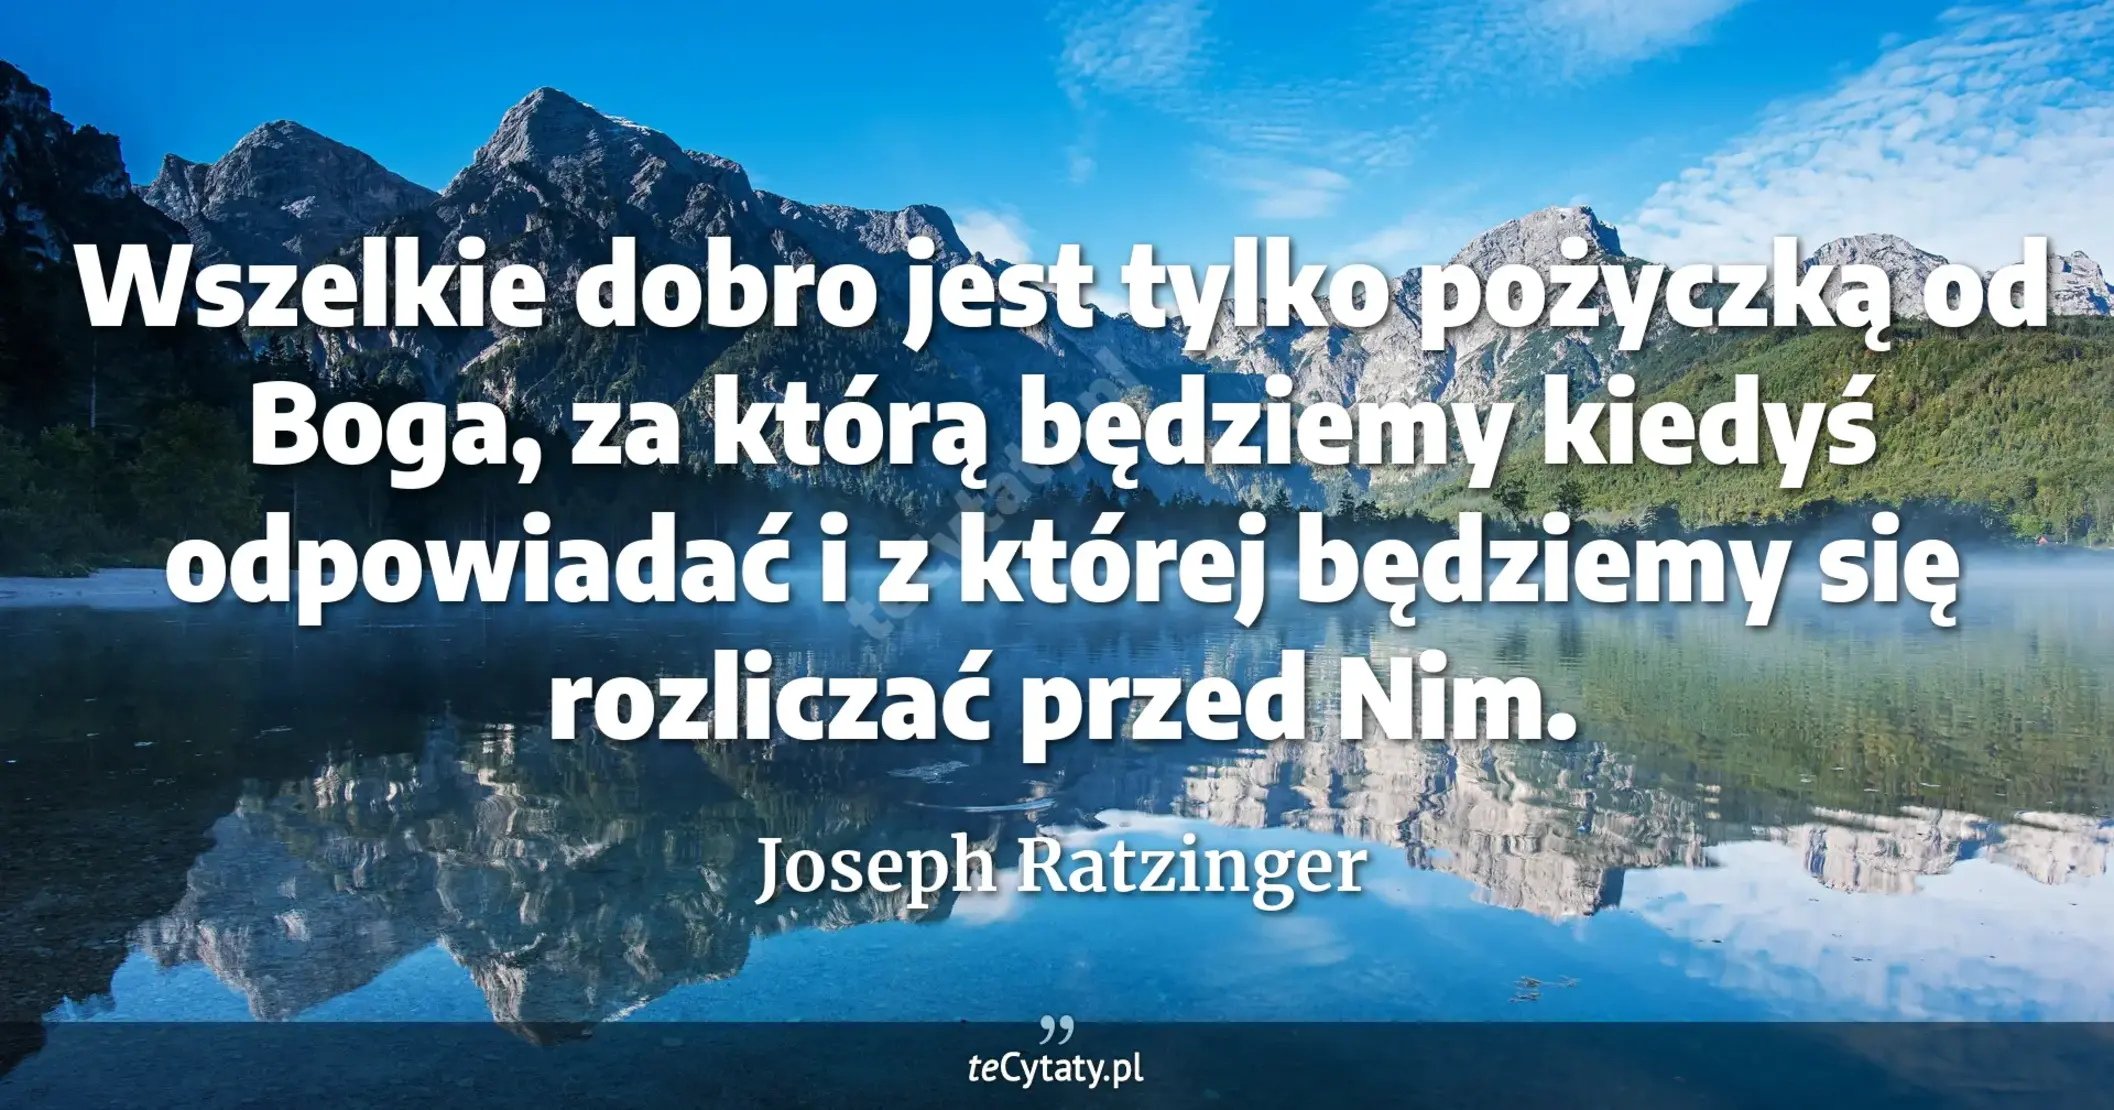 Wszelkie dobro jest tylko pożyczką od Boga, za którą będziemy kiedyś odpowiadać i z której będziemy się rozliczać przed Nim. - Joseph Ratzinger